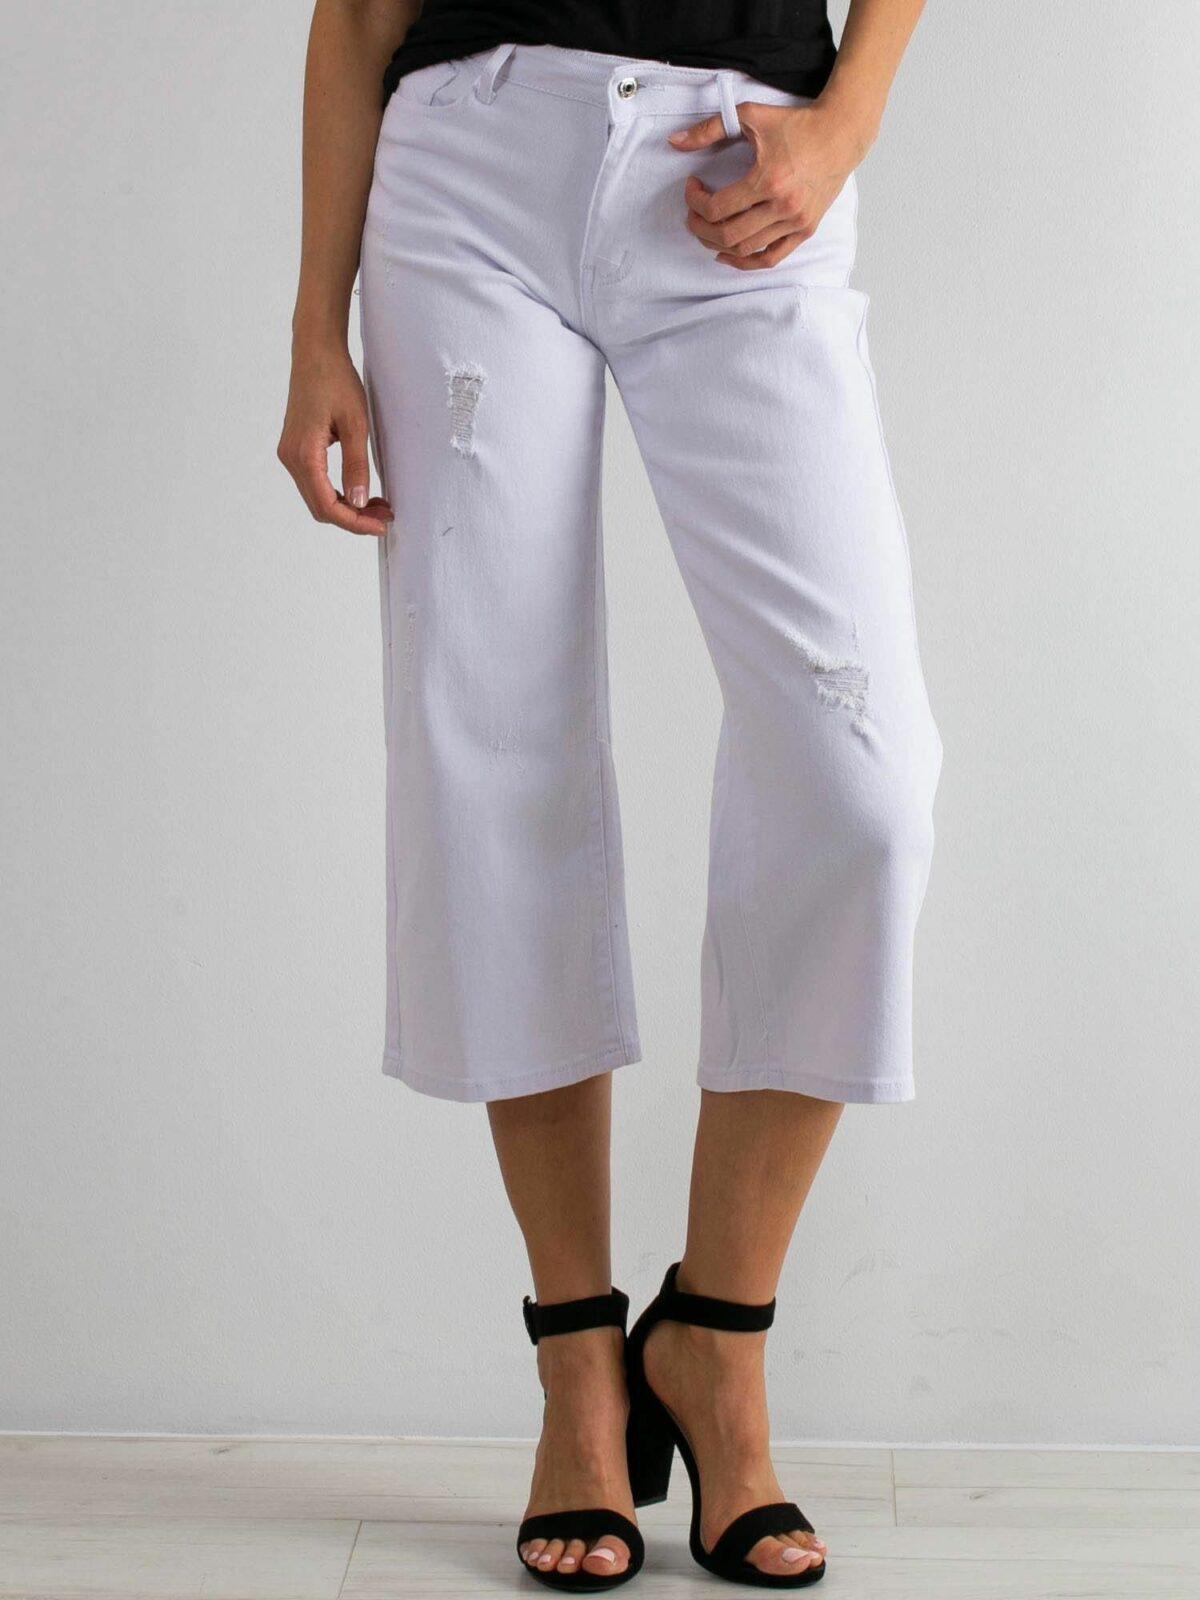 Roztrhané bílé džíny